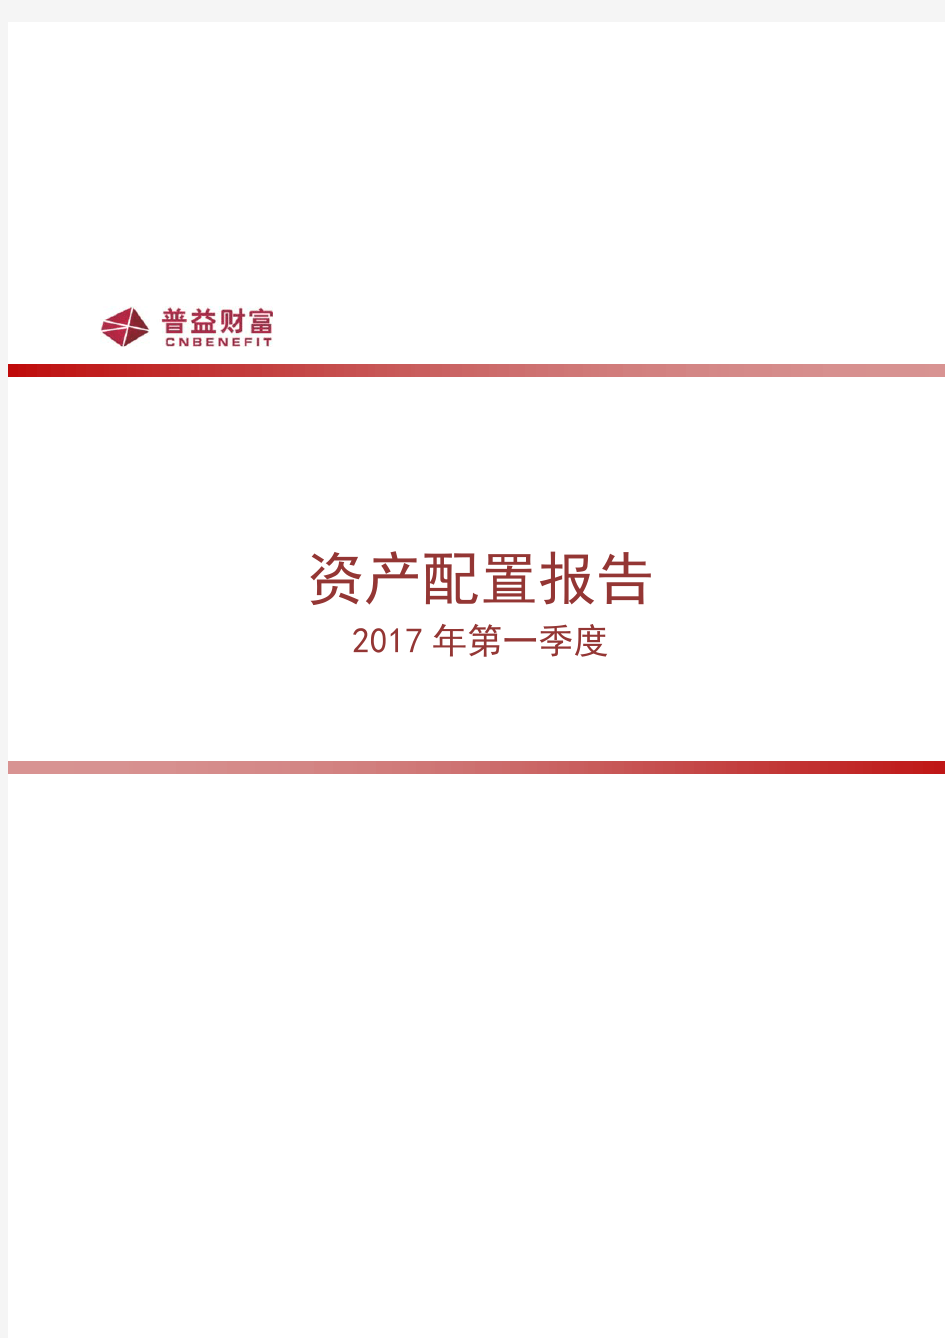 2017年第一季度资产配置报告